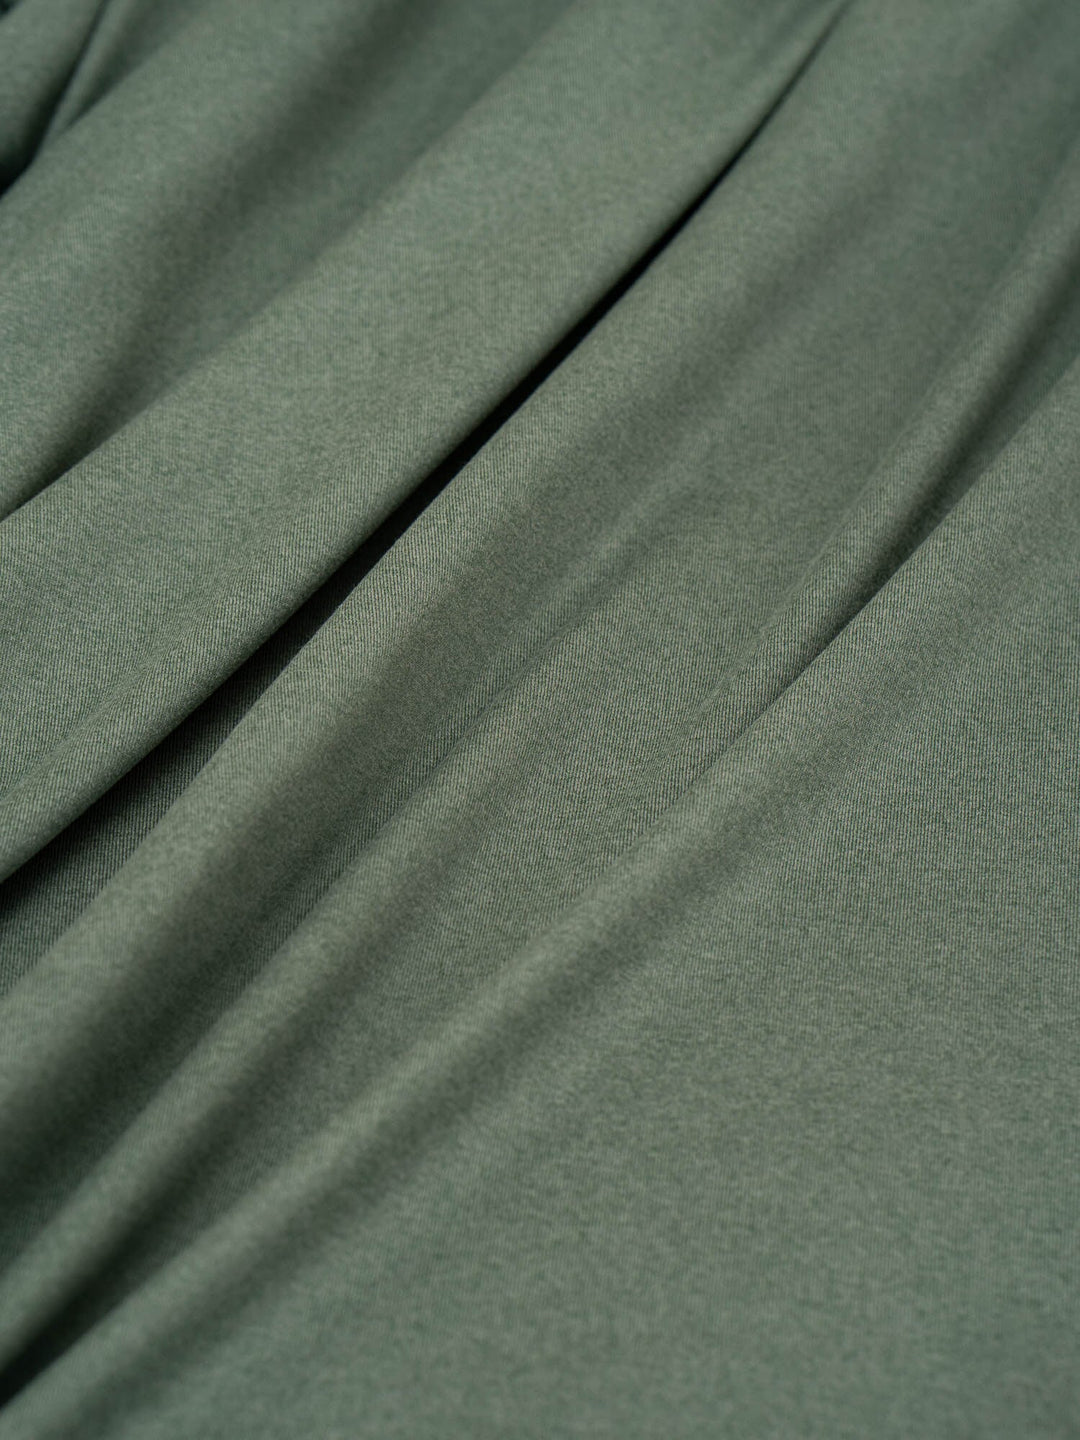 Soft Tech Oversized T-Shirt - Fern Green Marl Clothing Ryderwear 